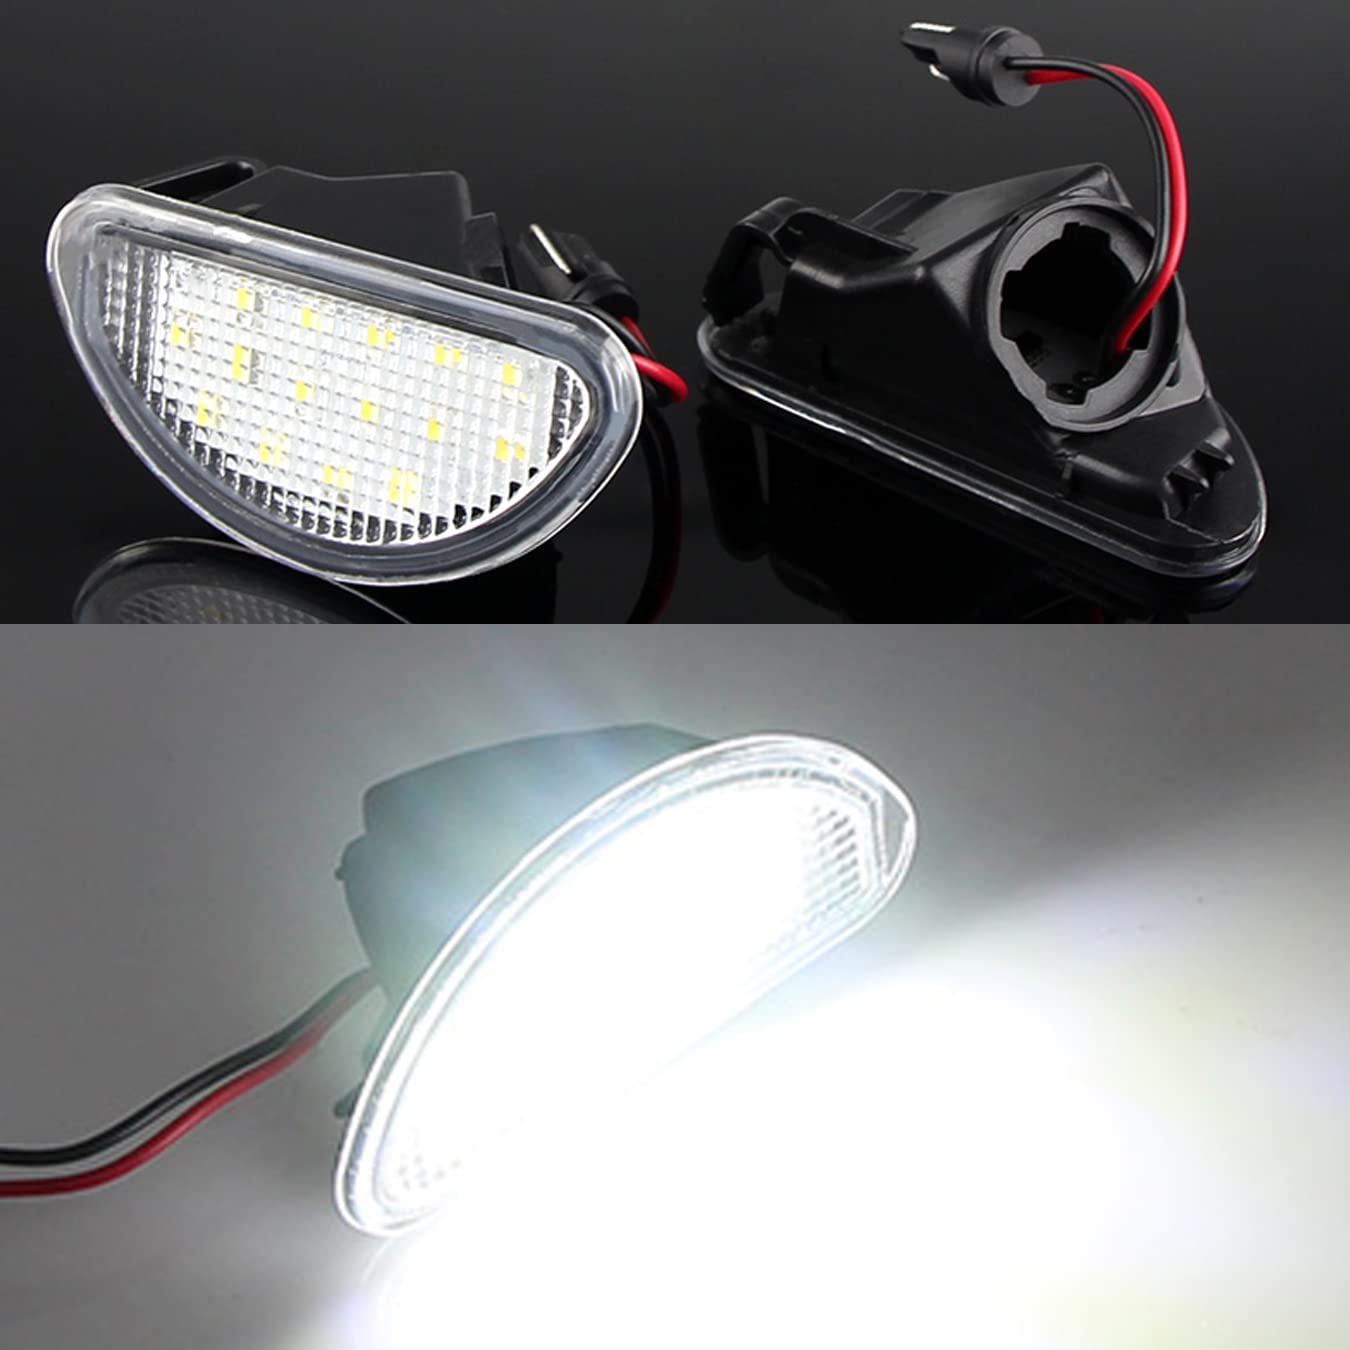 2x LED Autokennzeichenbeleuchtung für T-oyota A-ygo MK I 2005-2014 AB10 Autozubehör von DHCN